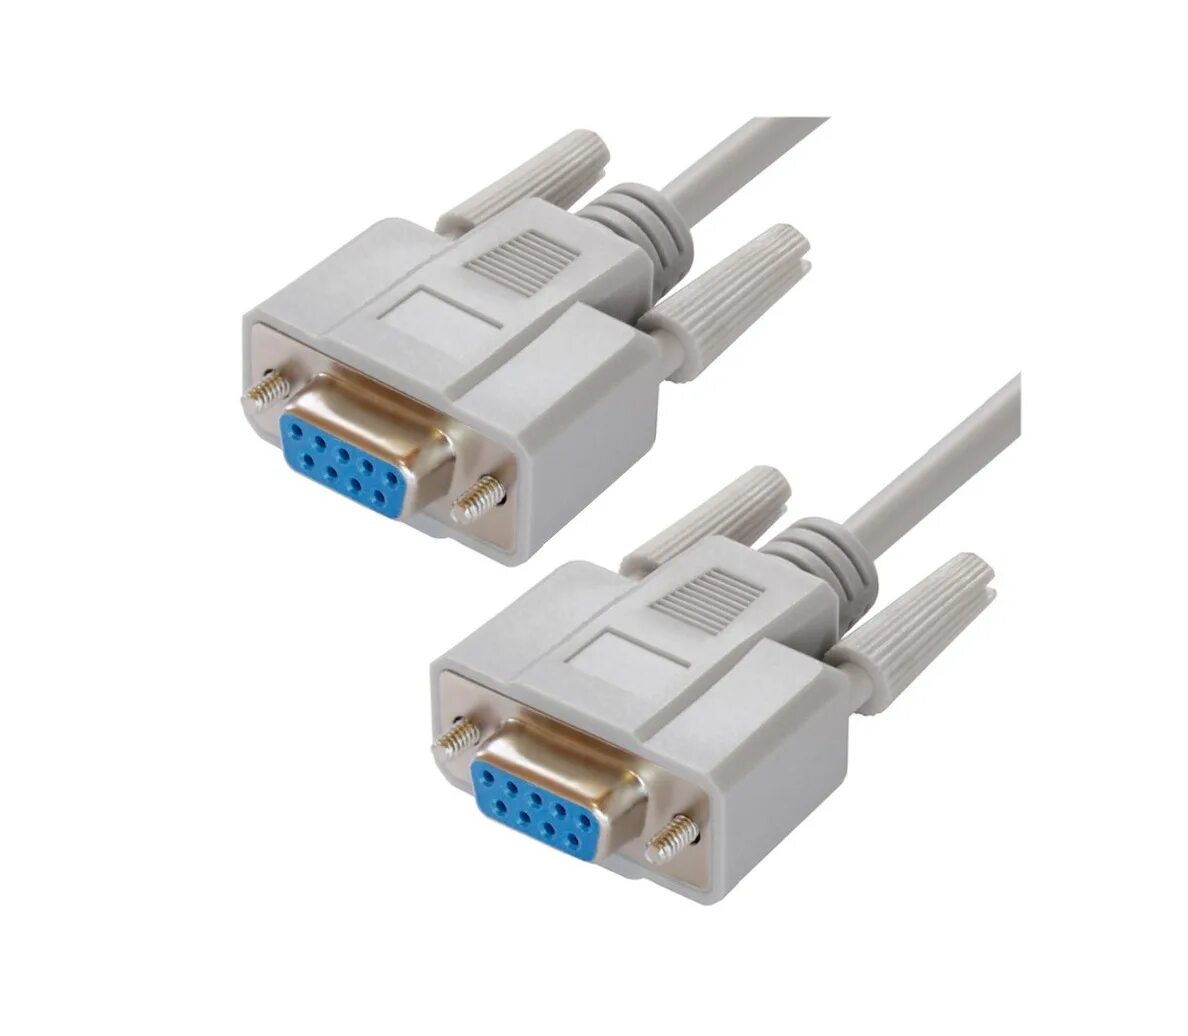 Кабель rs232 купить. Кабель модемный rs232. Нуль-модемный кабель (rs232). Кабель нуль-модемный db9 f/f. GCR-51407, GCR кабель 1.0m RS-232, 0-модемный, db9/db9 9f/9f, серый, 30 AWG/Greenconnect.